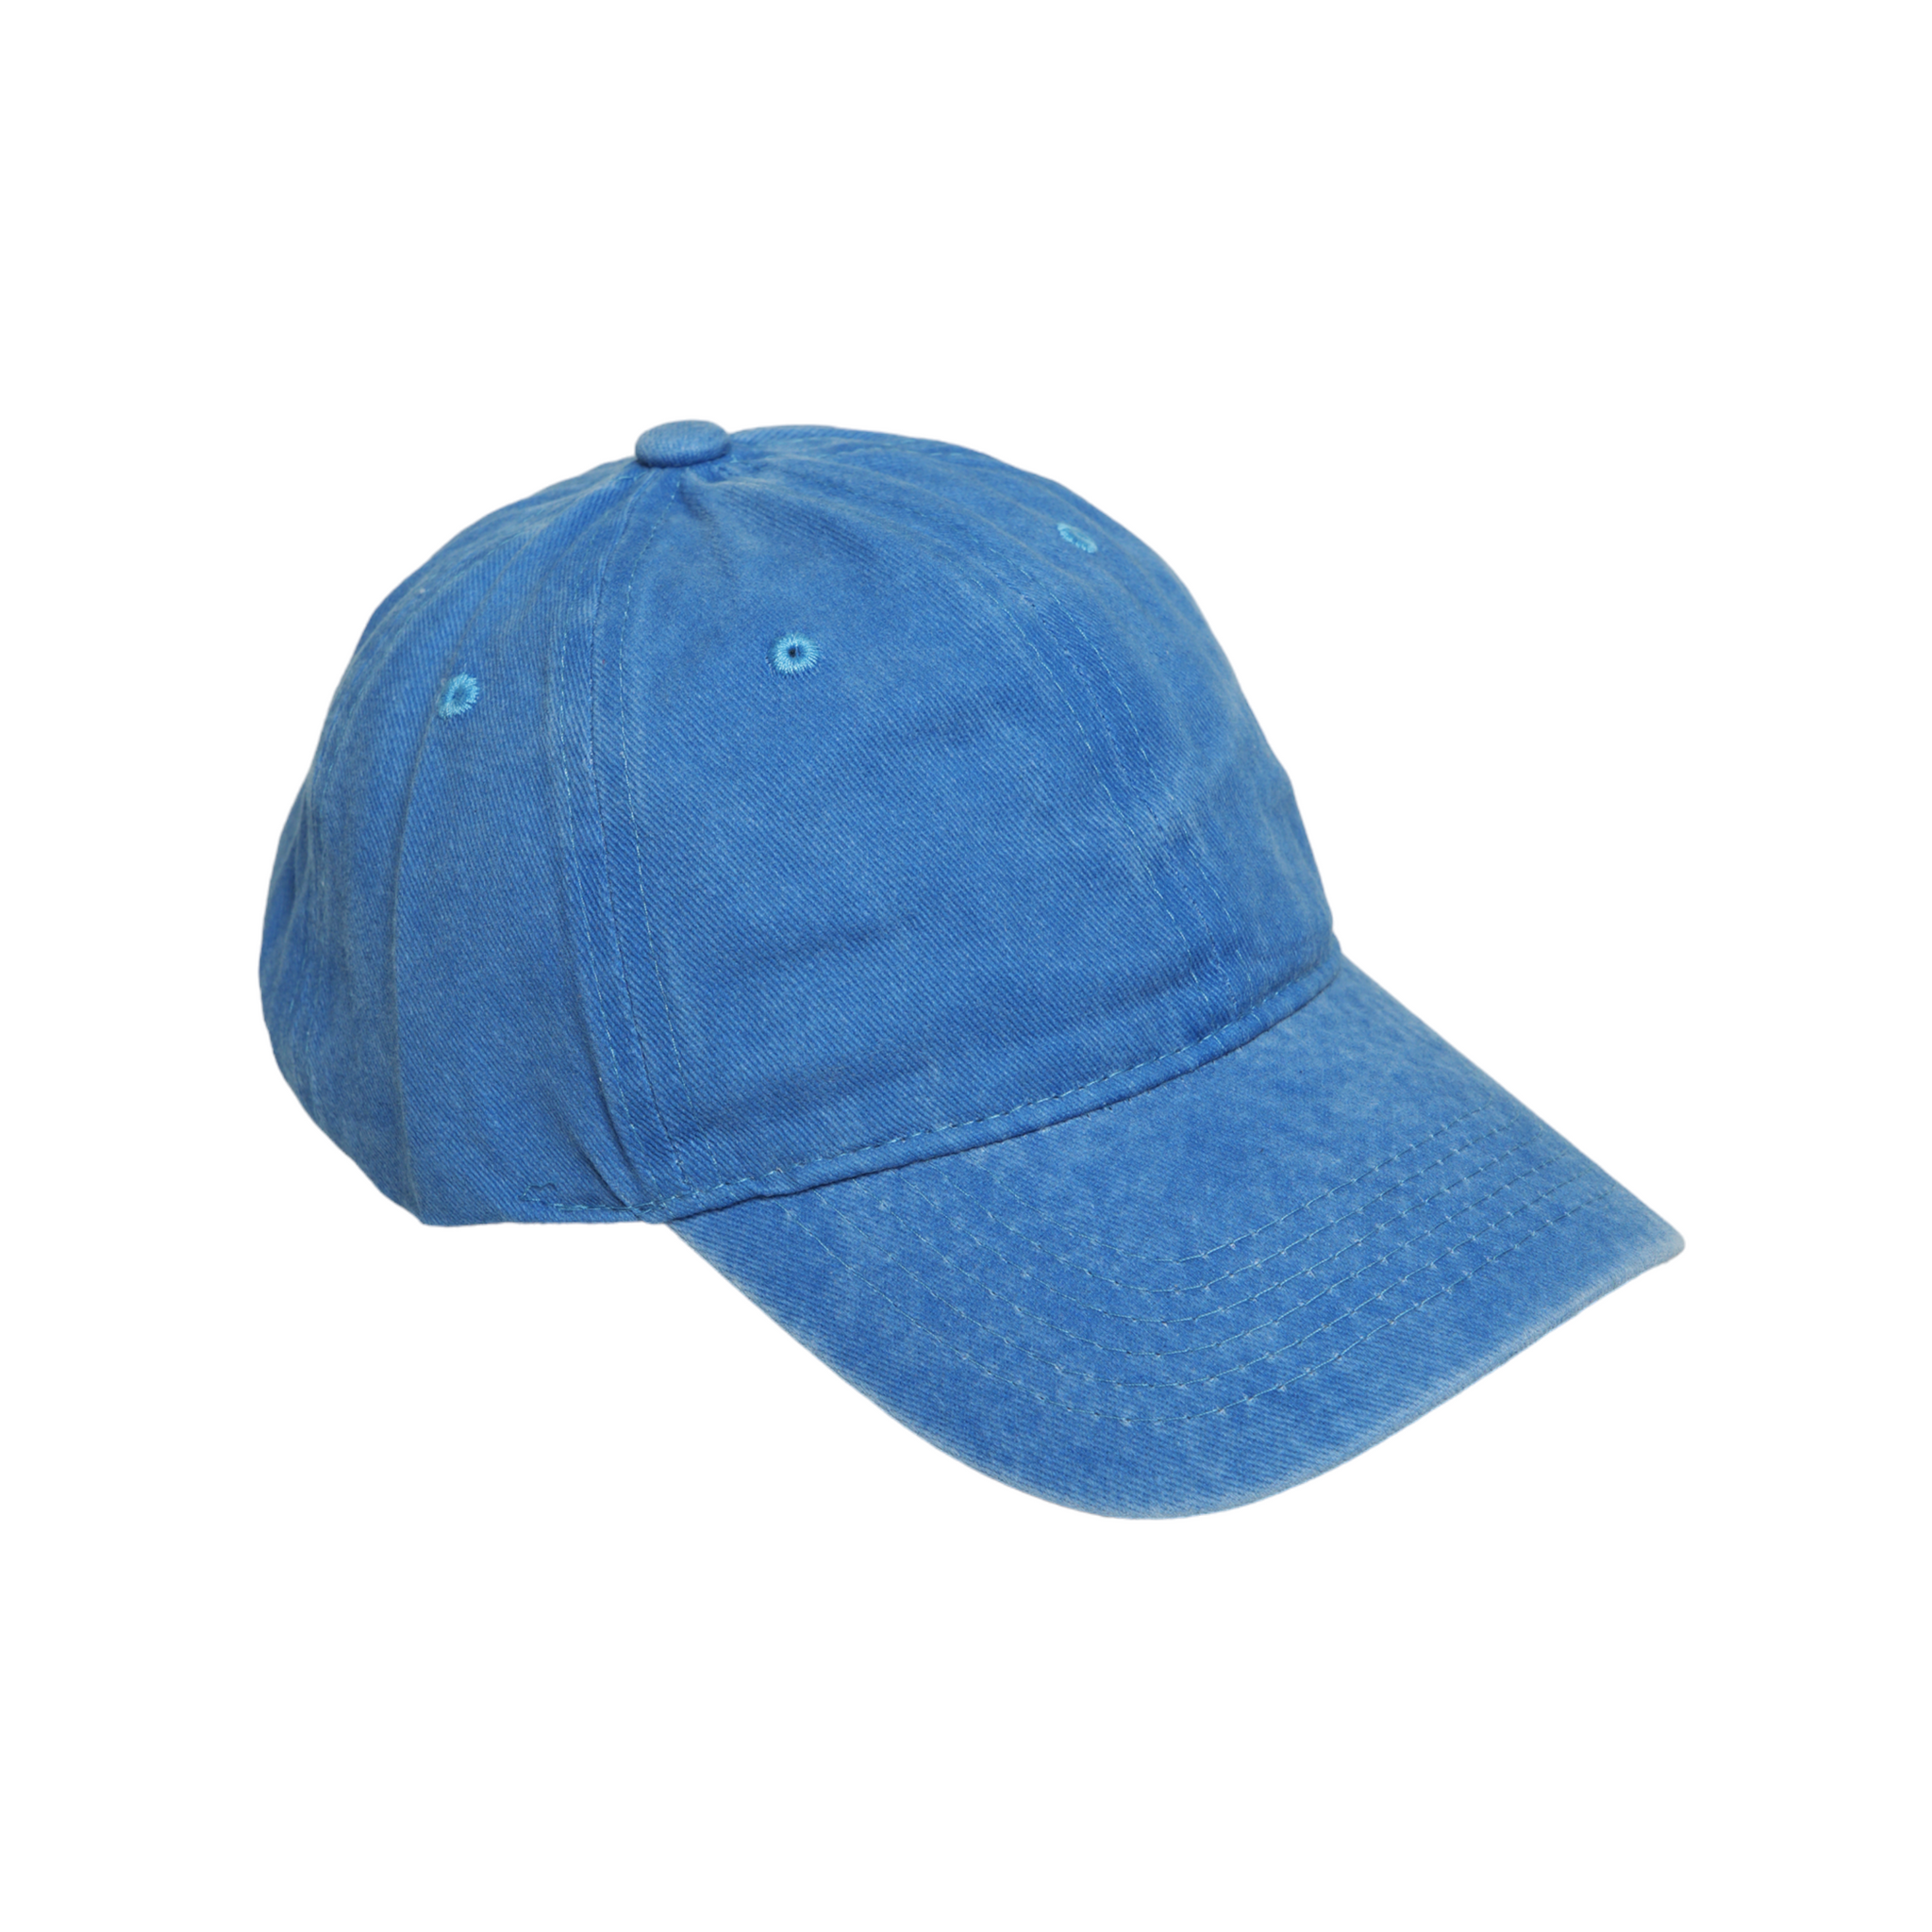 Chokore Blank Washed Baseball Cap (Blue)